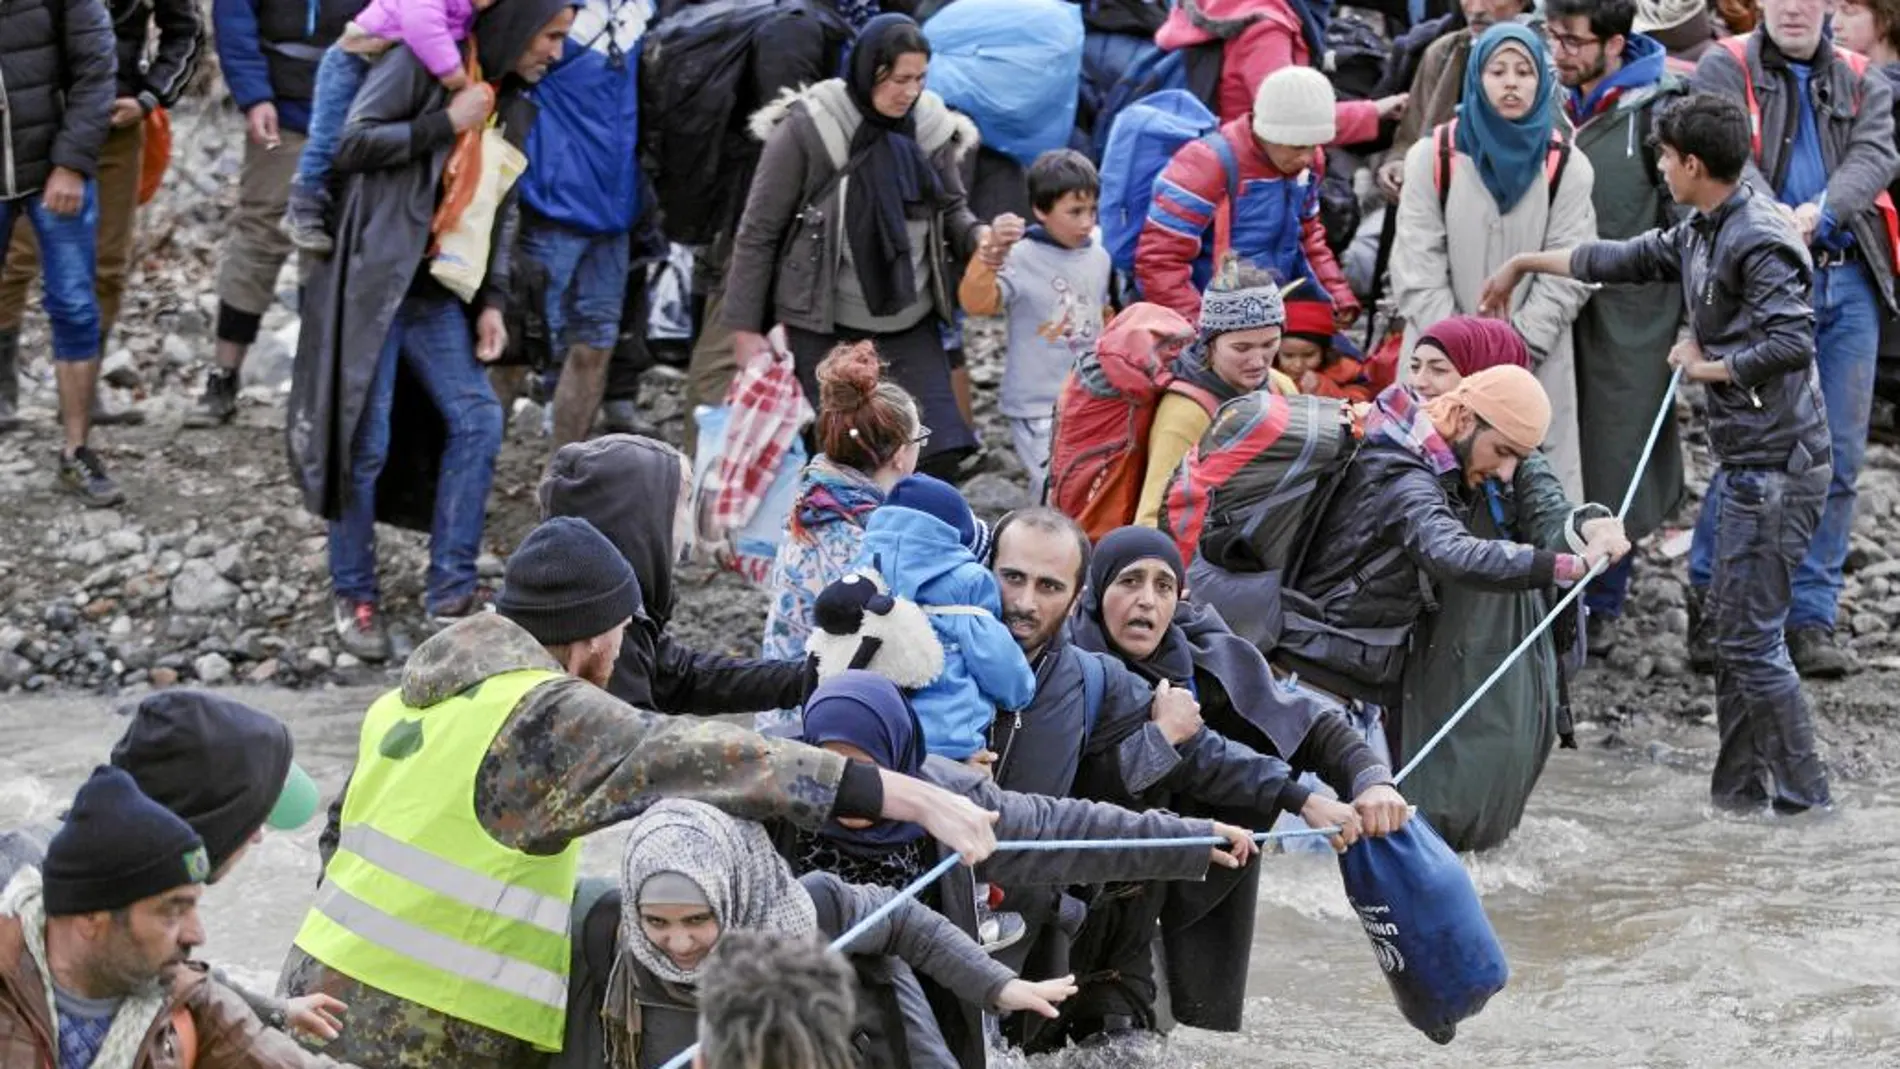 Los refugiados vadean un río en la frontera de Grecia con Macedonia